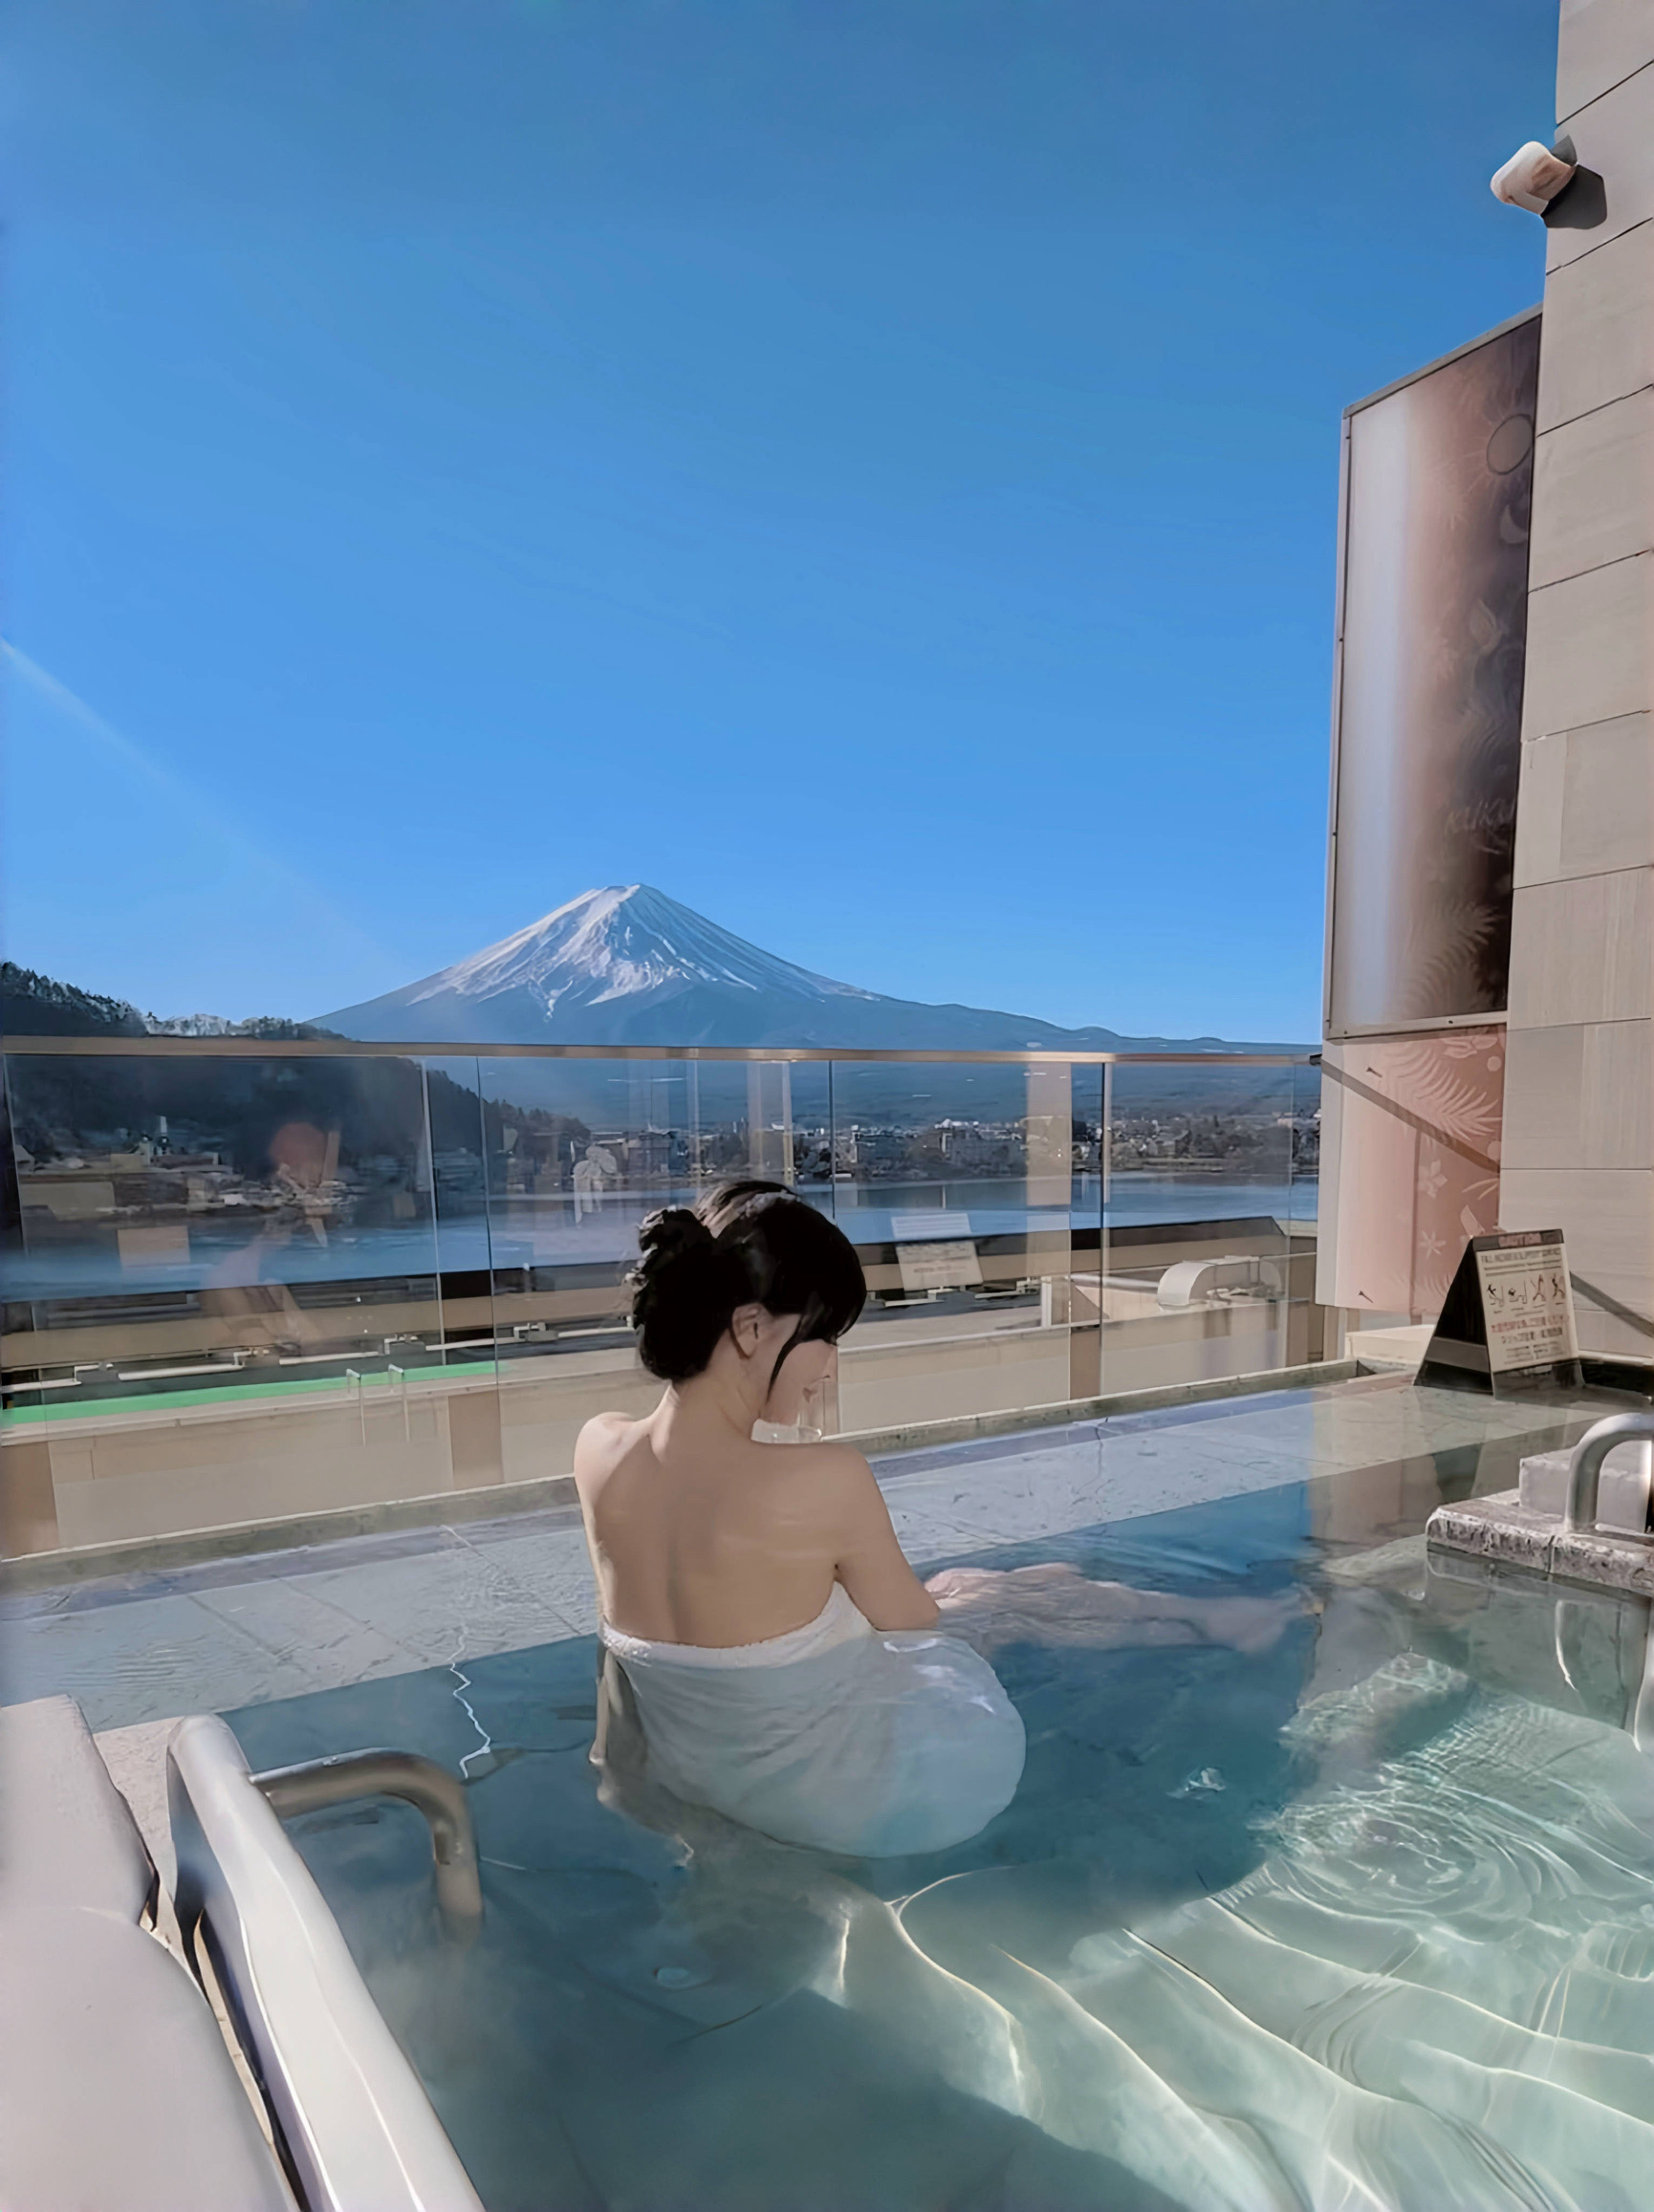 独享整个富士山🗻kukuna真的很爱♨️太舒服了